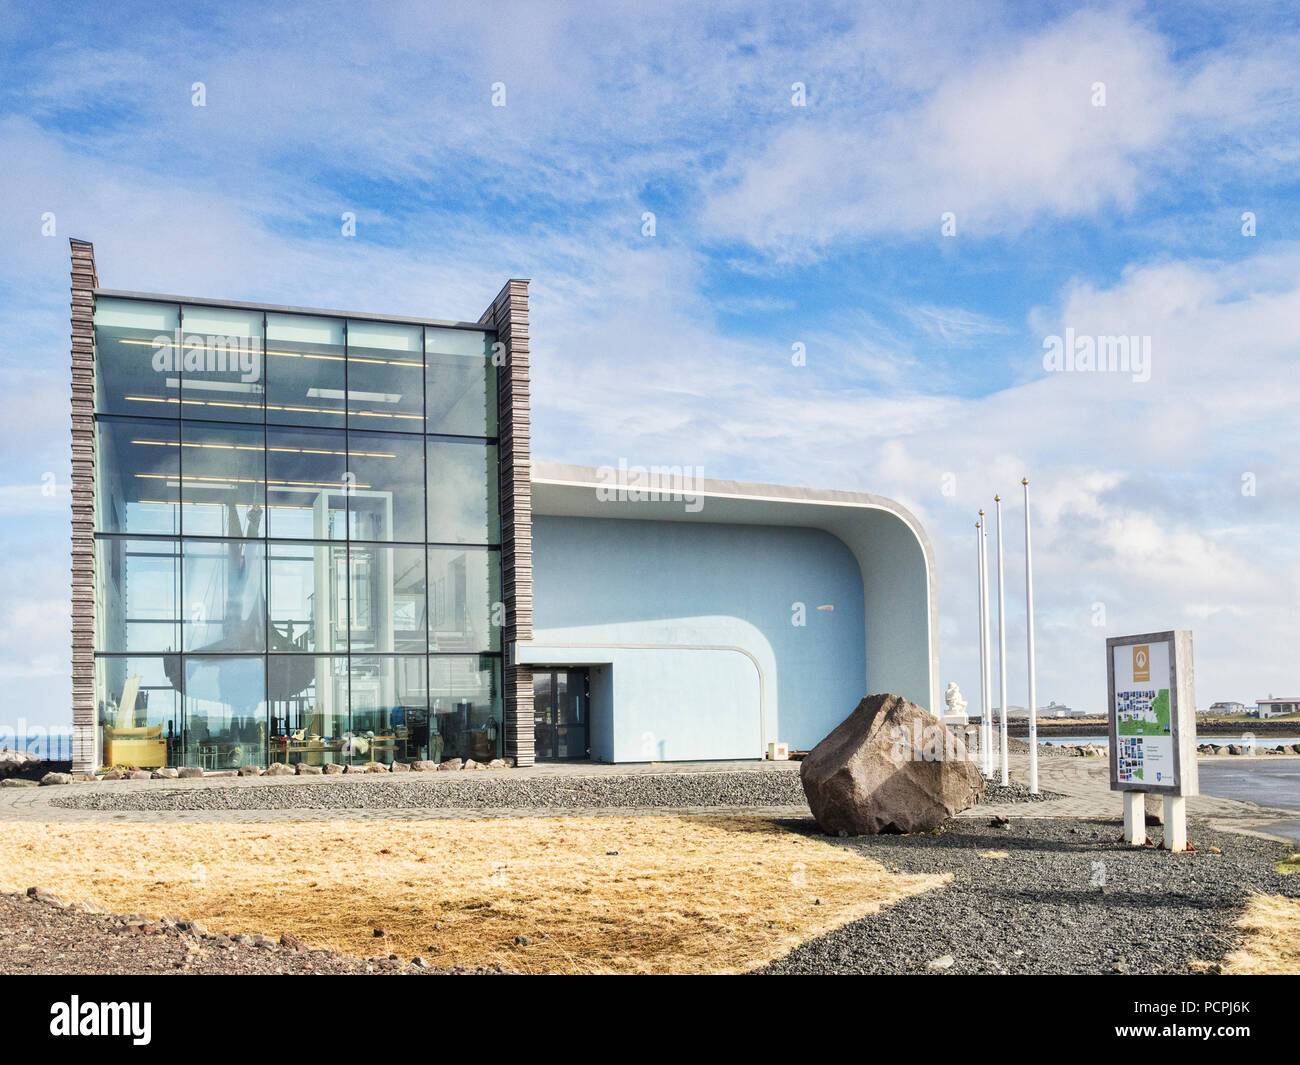 18 avril 2018 : Keflavik, Islande - Viking World Museum. Banque D'Images